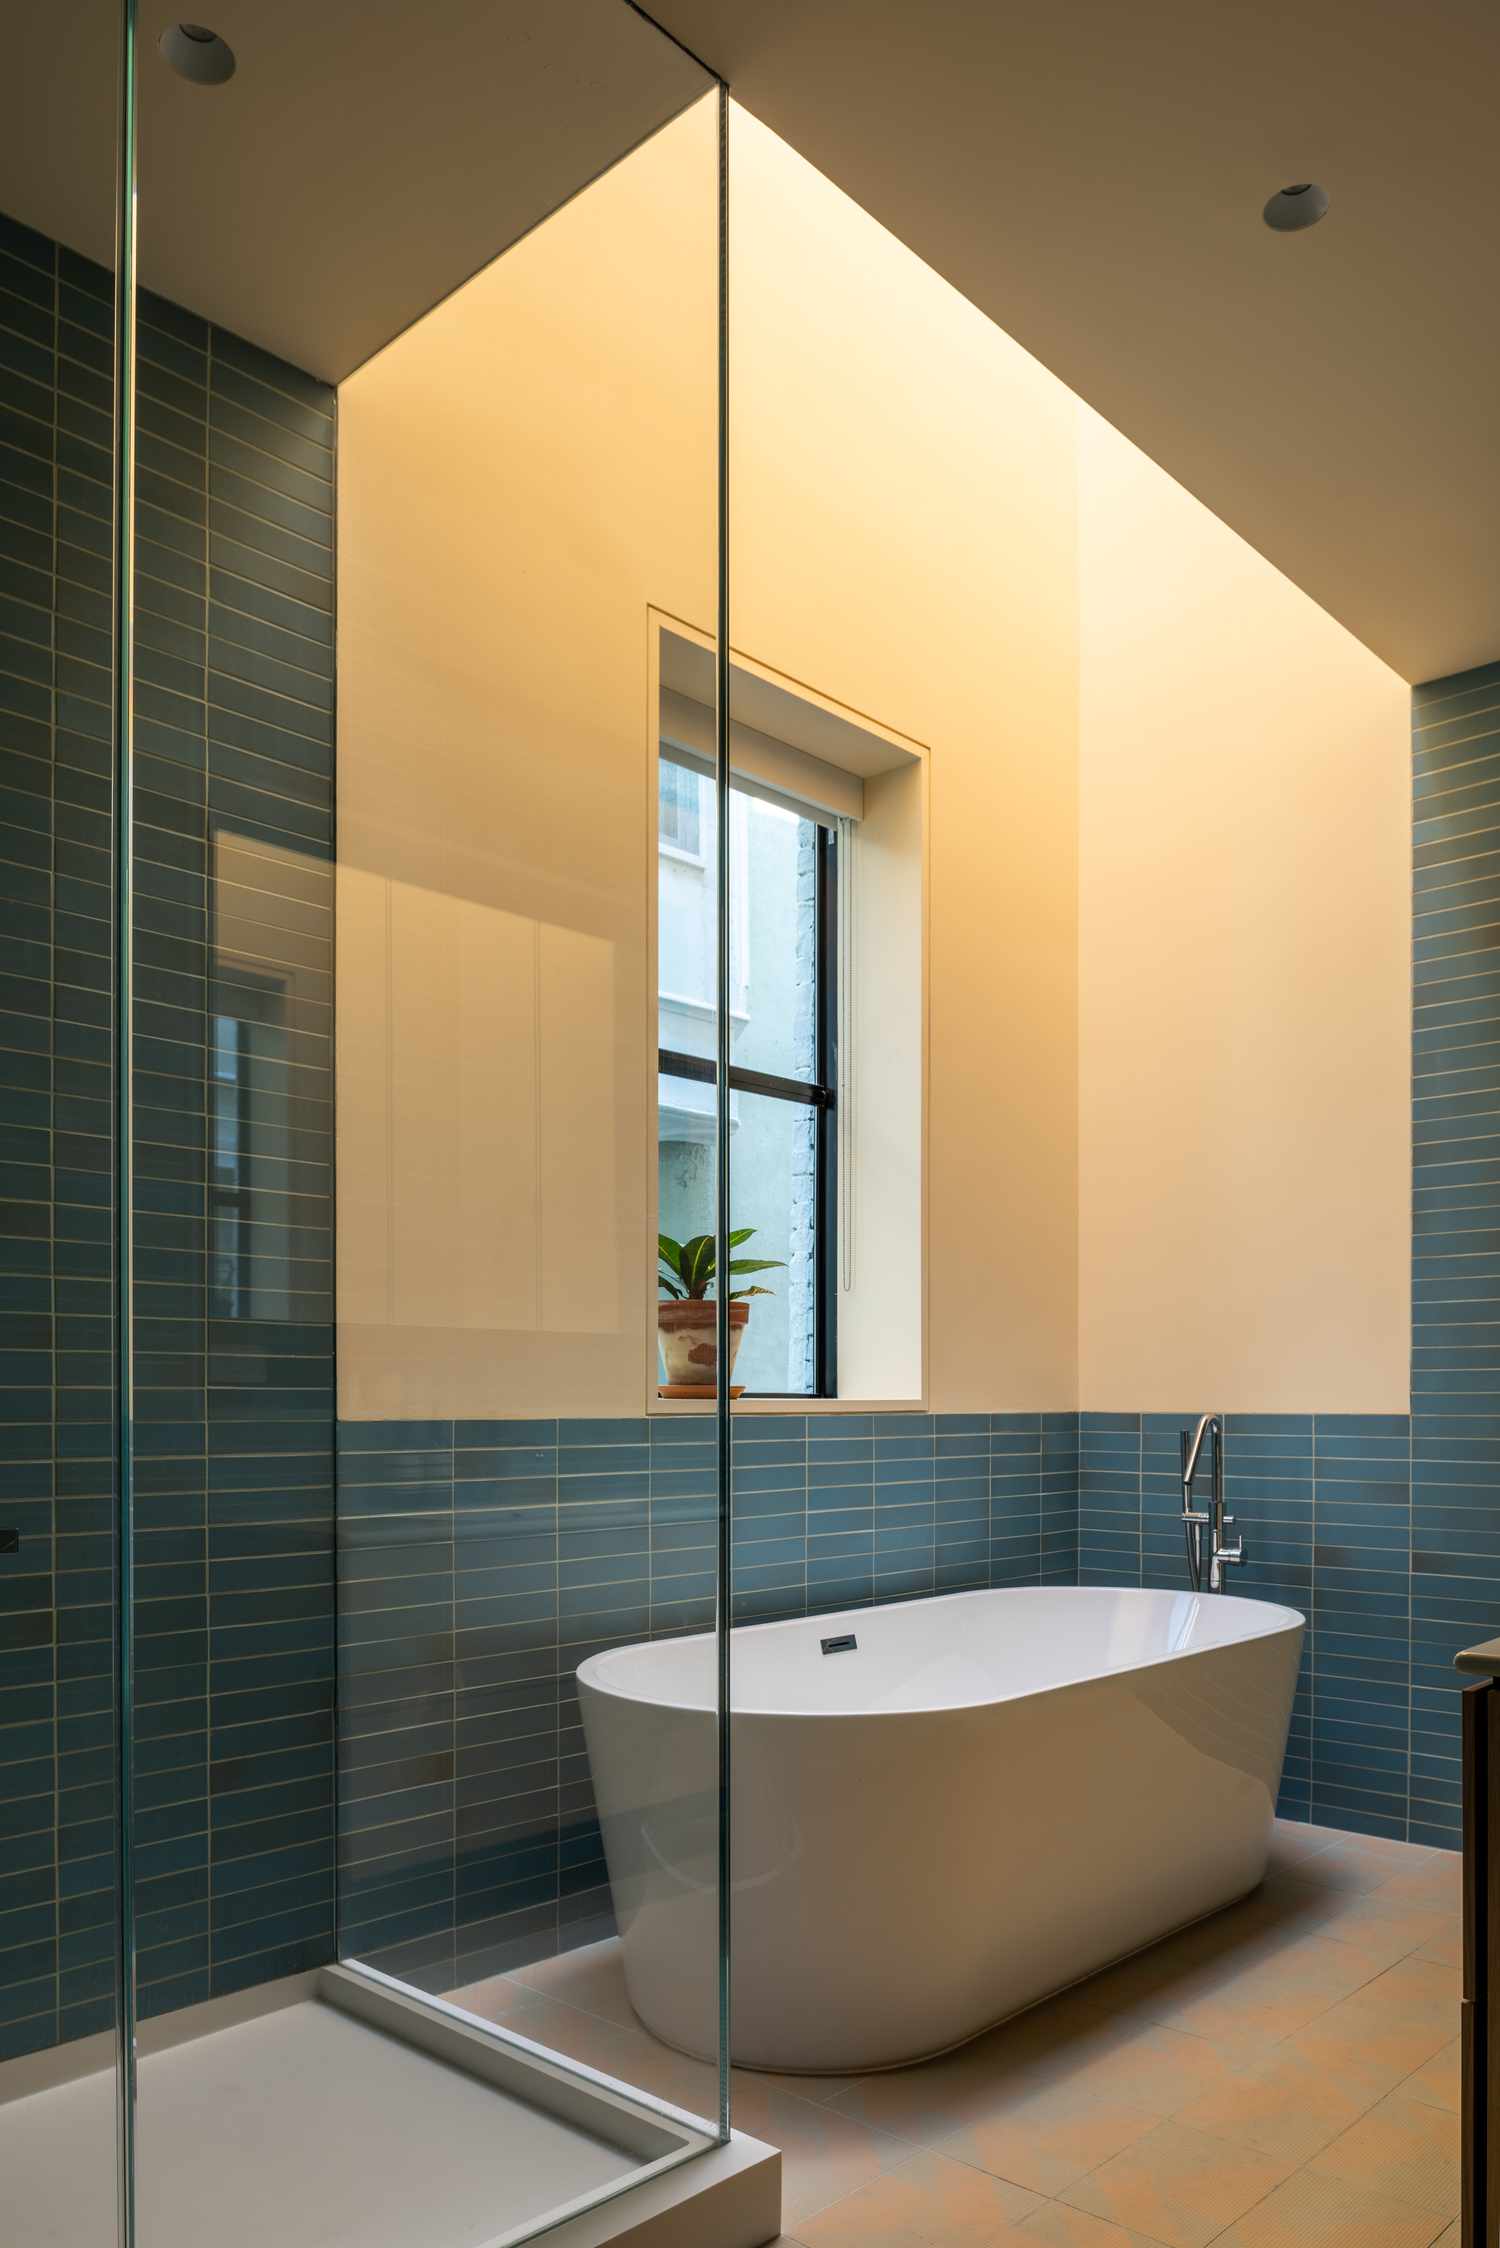 Gelbes Badezimmer mit hellgelben Wänden, freistehender Wanne und modernen blauen Fliesen